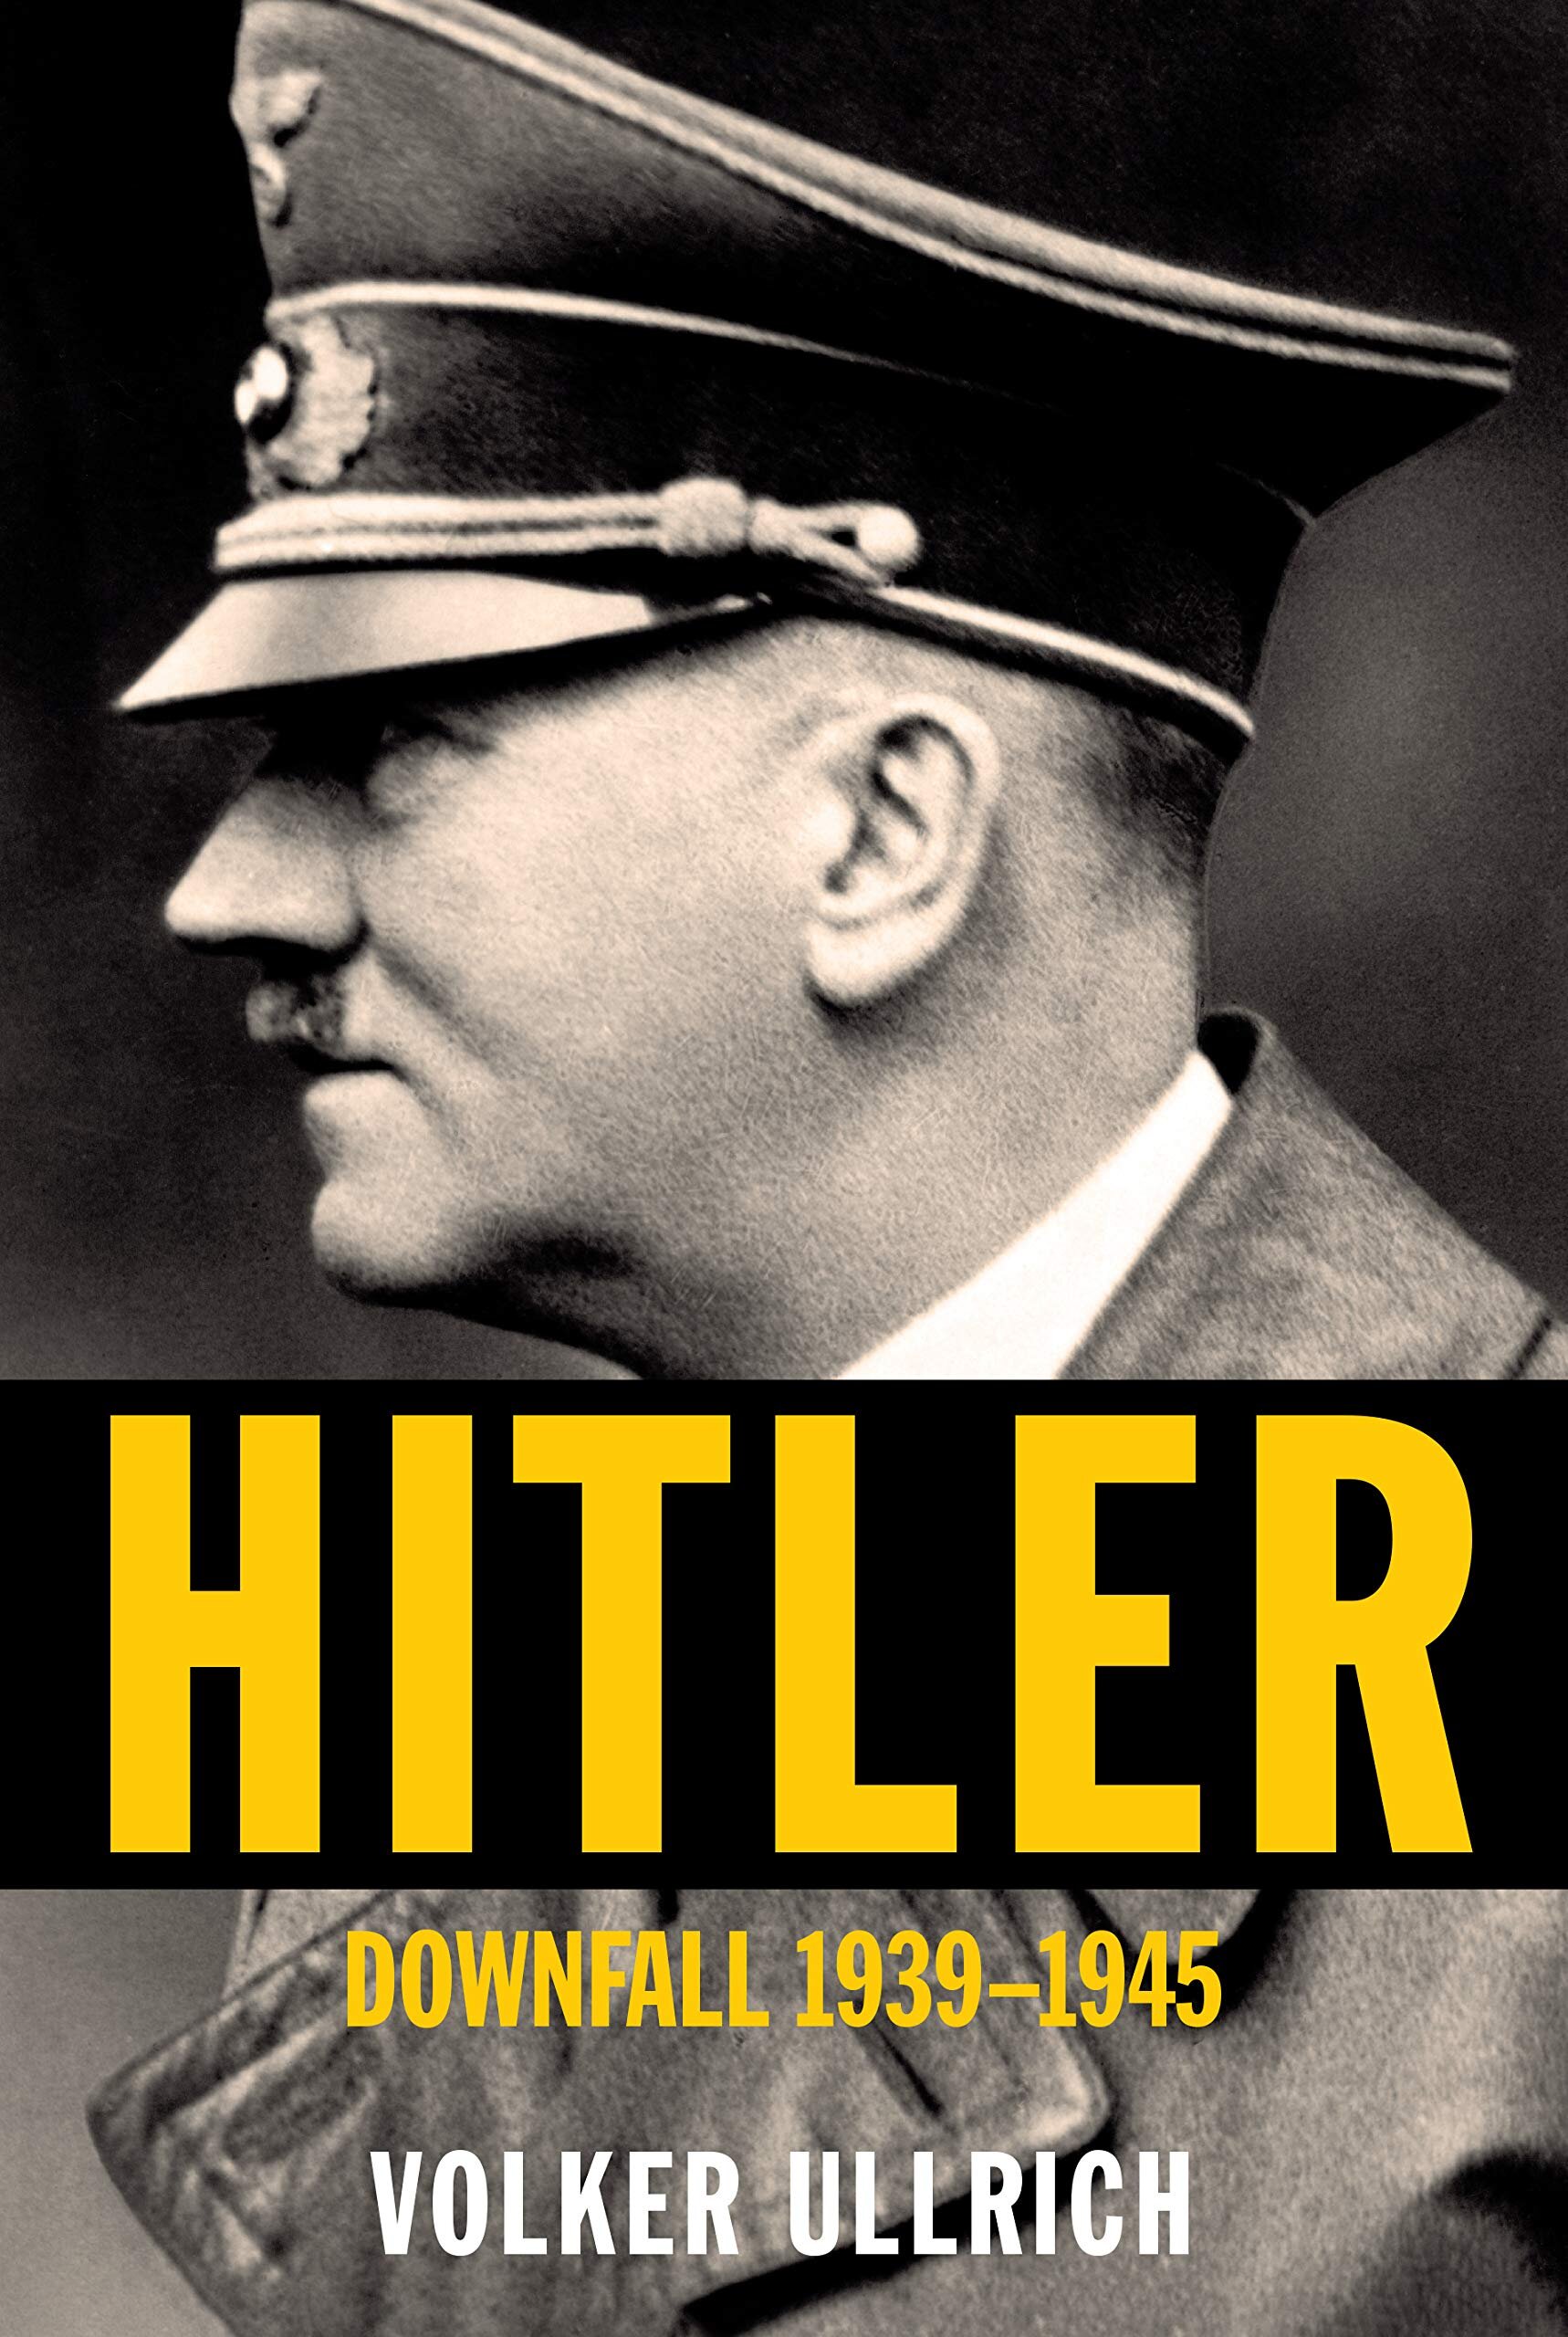 Spotlight on Volkmer Ullrich’s Hitler: Downfall 1939-1945